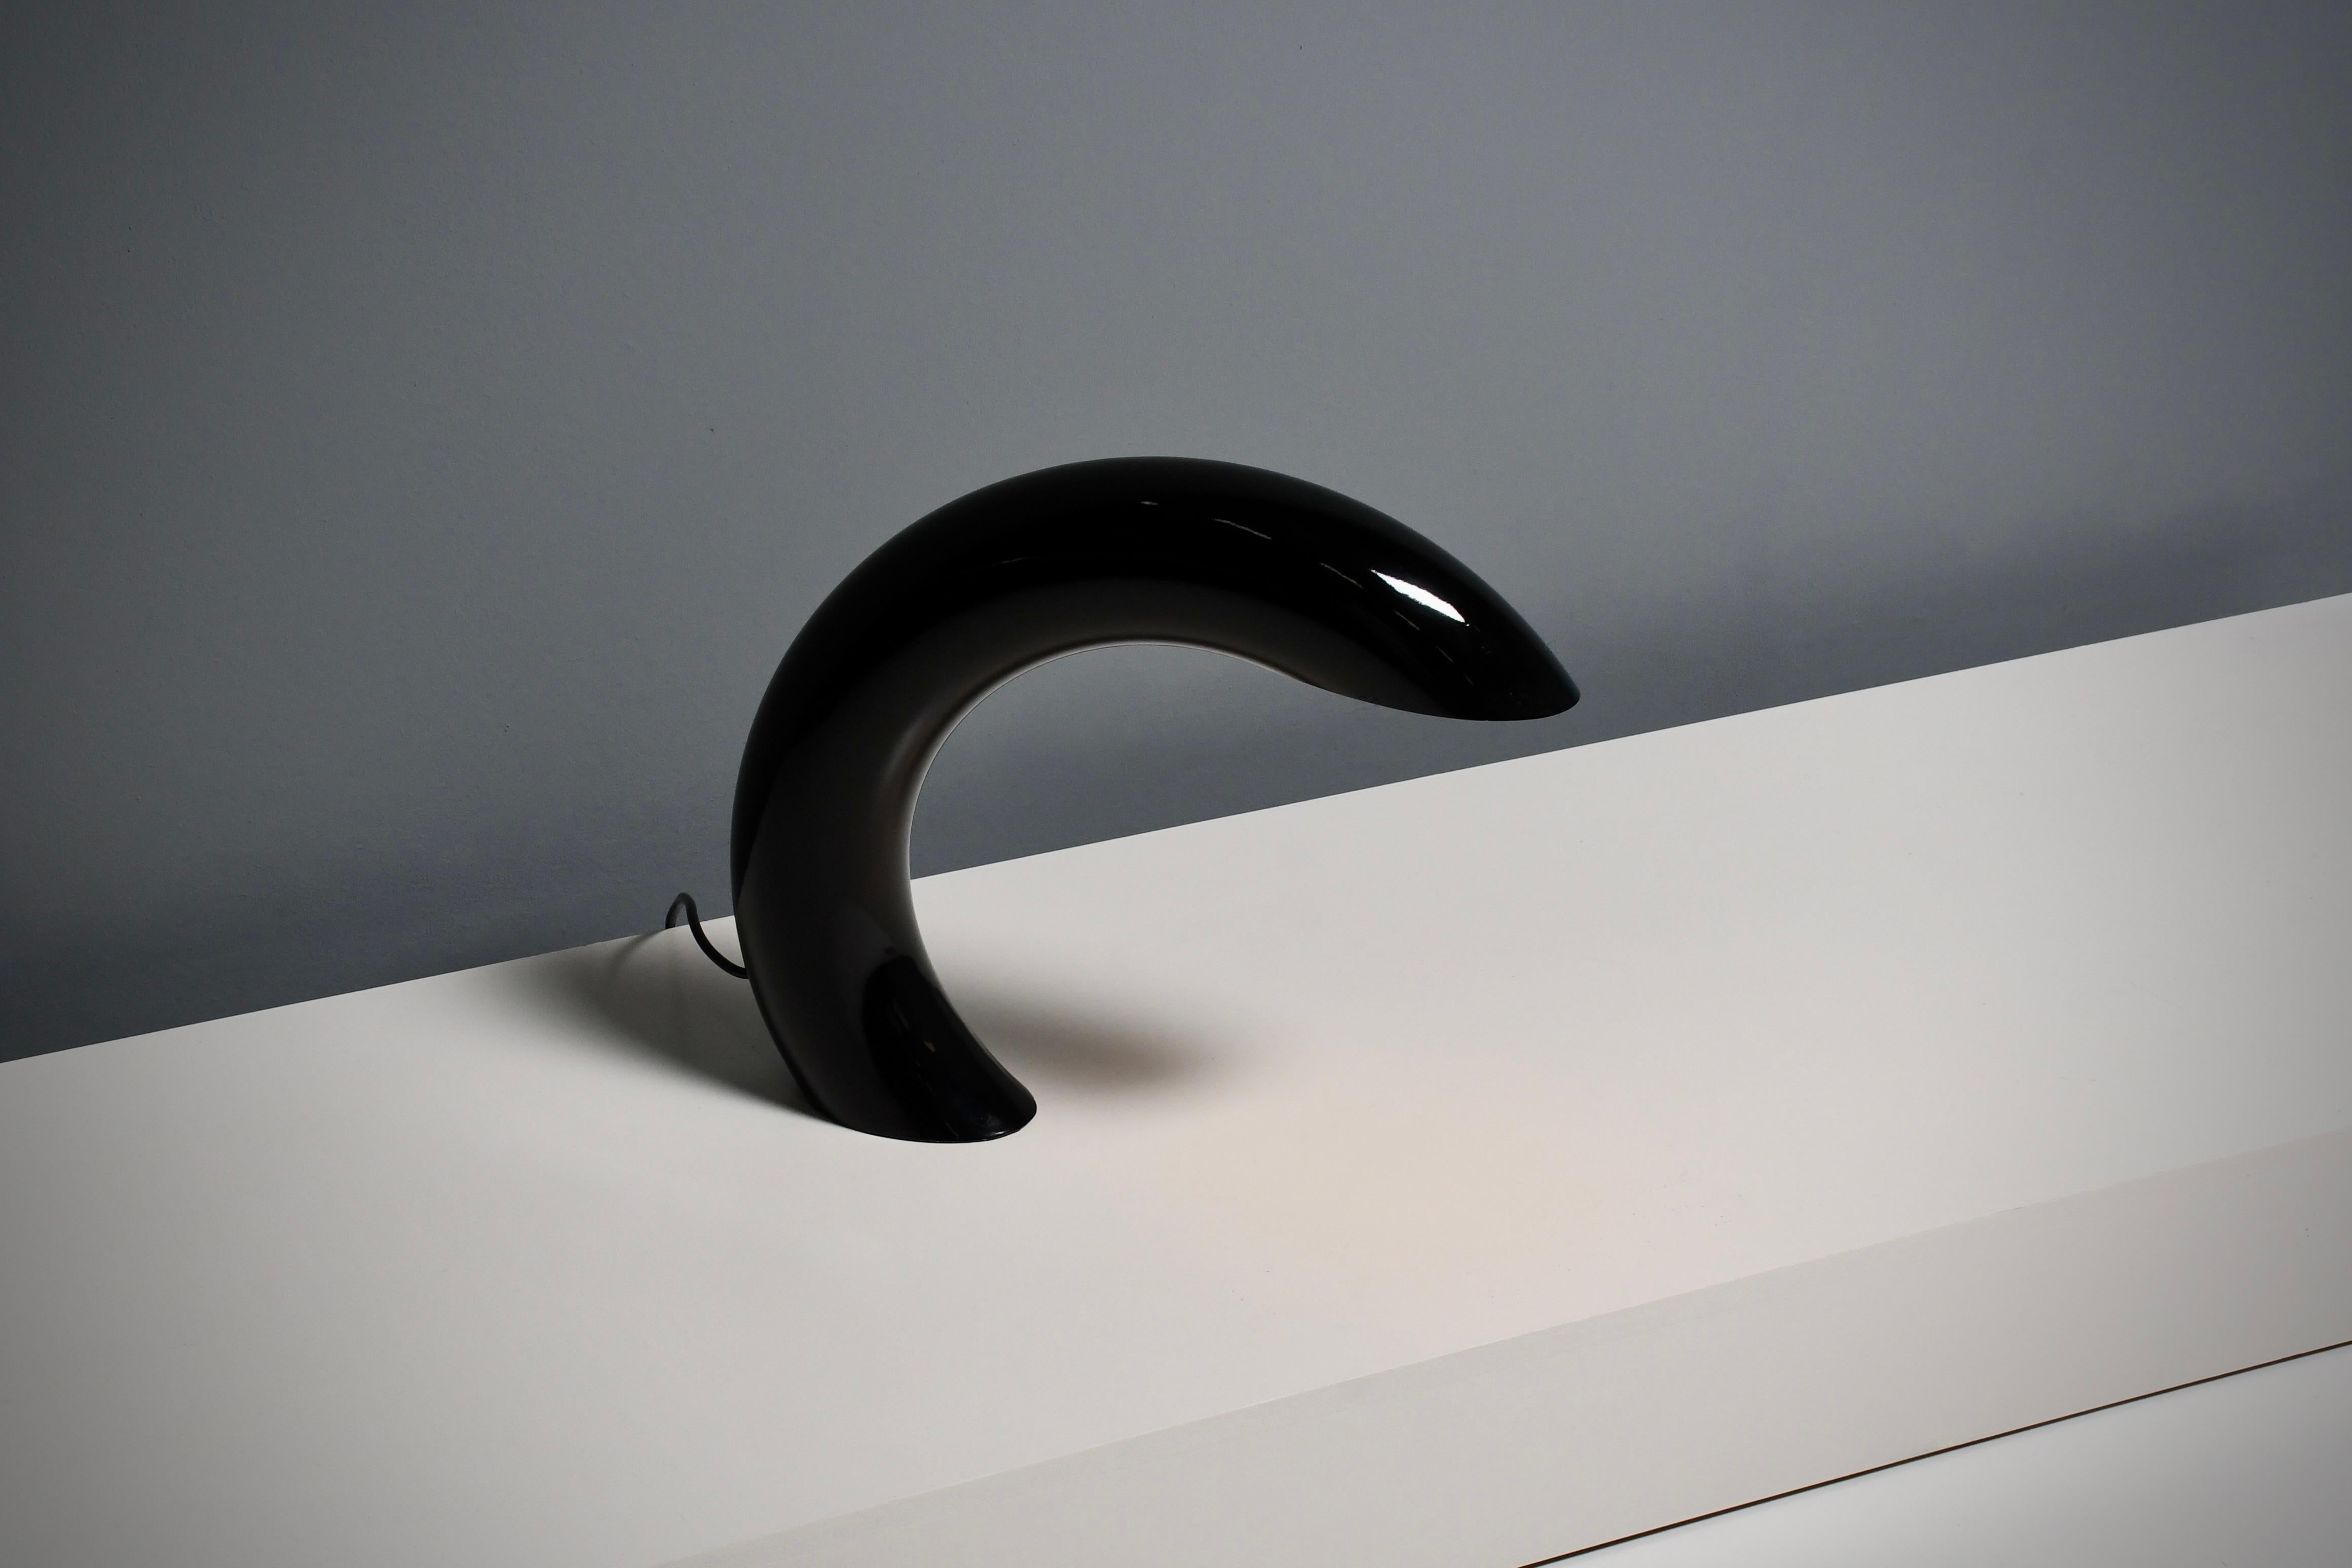 Skulptural geformte Tischlampe in sehr gutem Zustand.

Entworfen von Georges Frydman, Frankreich 1960er Jahre.

Diese Lampe ist ein Meisterwerk der minimalistischen Eleganz. 
Diese skulpturale Tischleuchte ist aus einem massiven, kreisförmigen Rohr